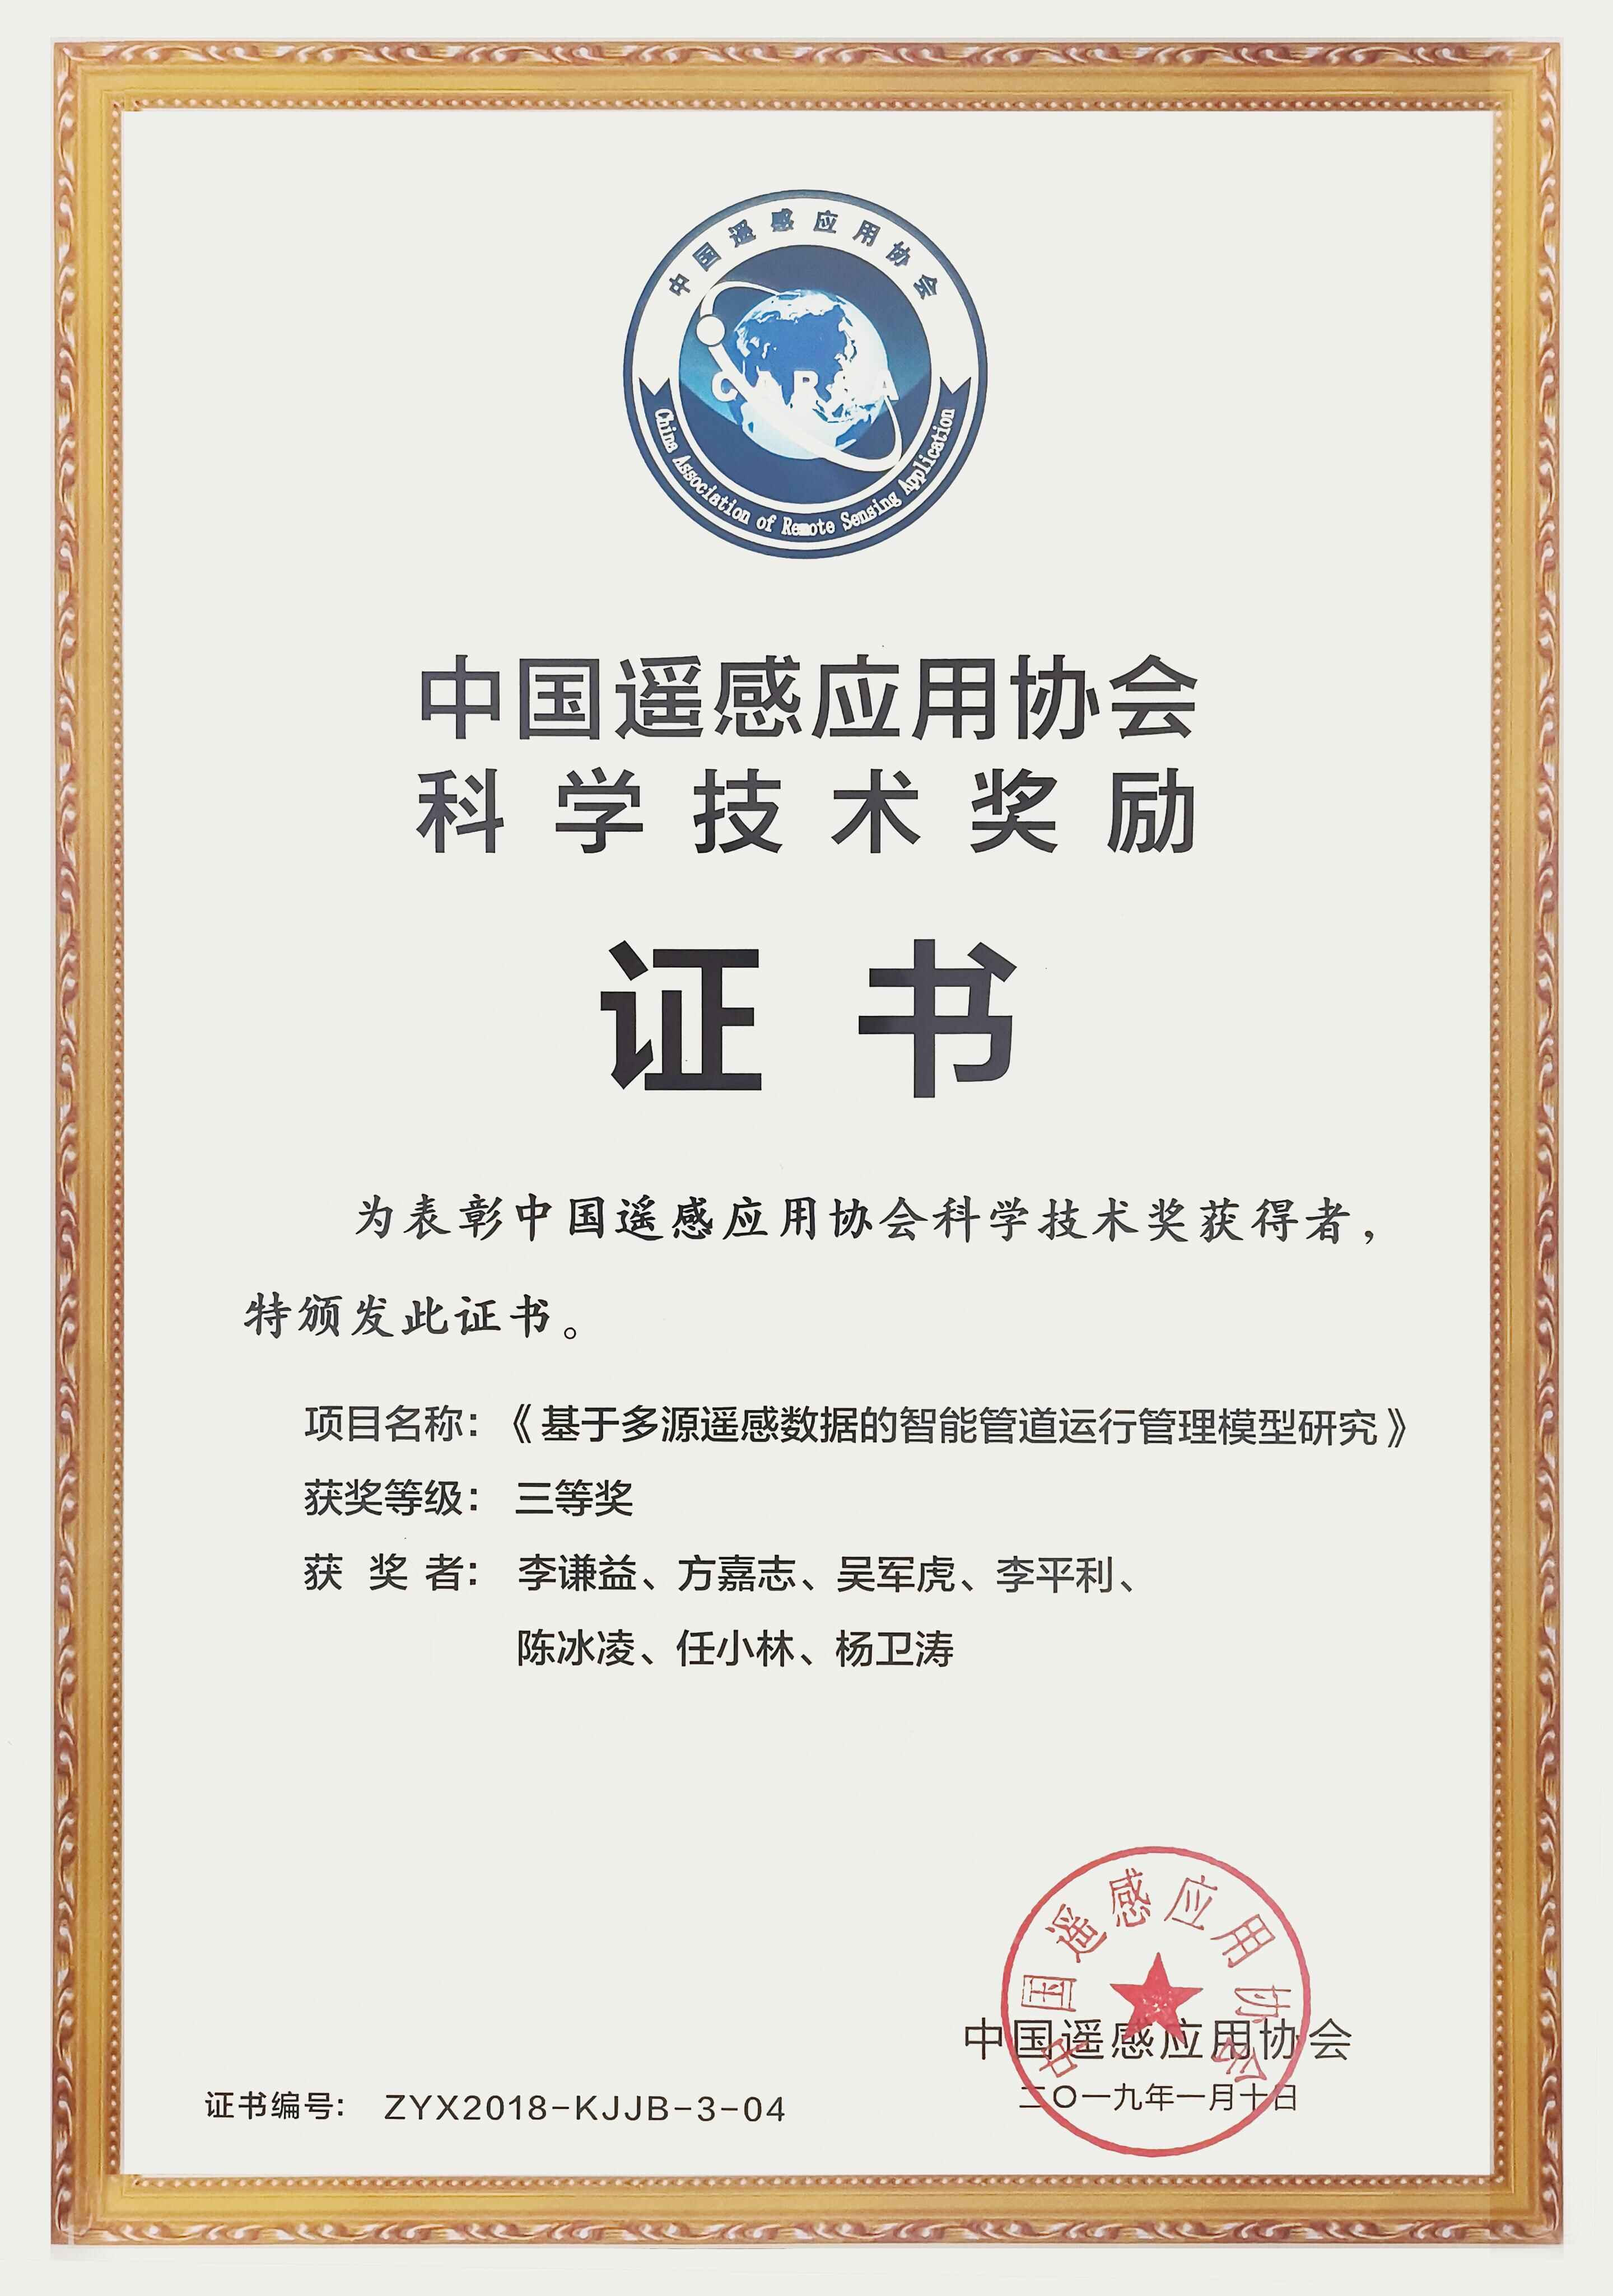 中國遙感應用協會科學技術獎